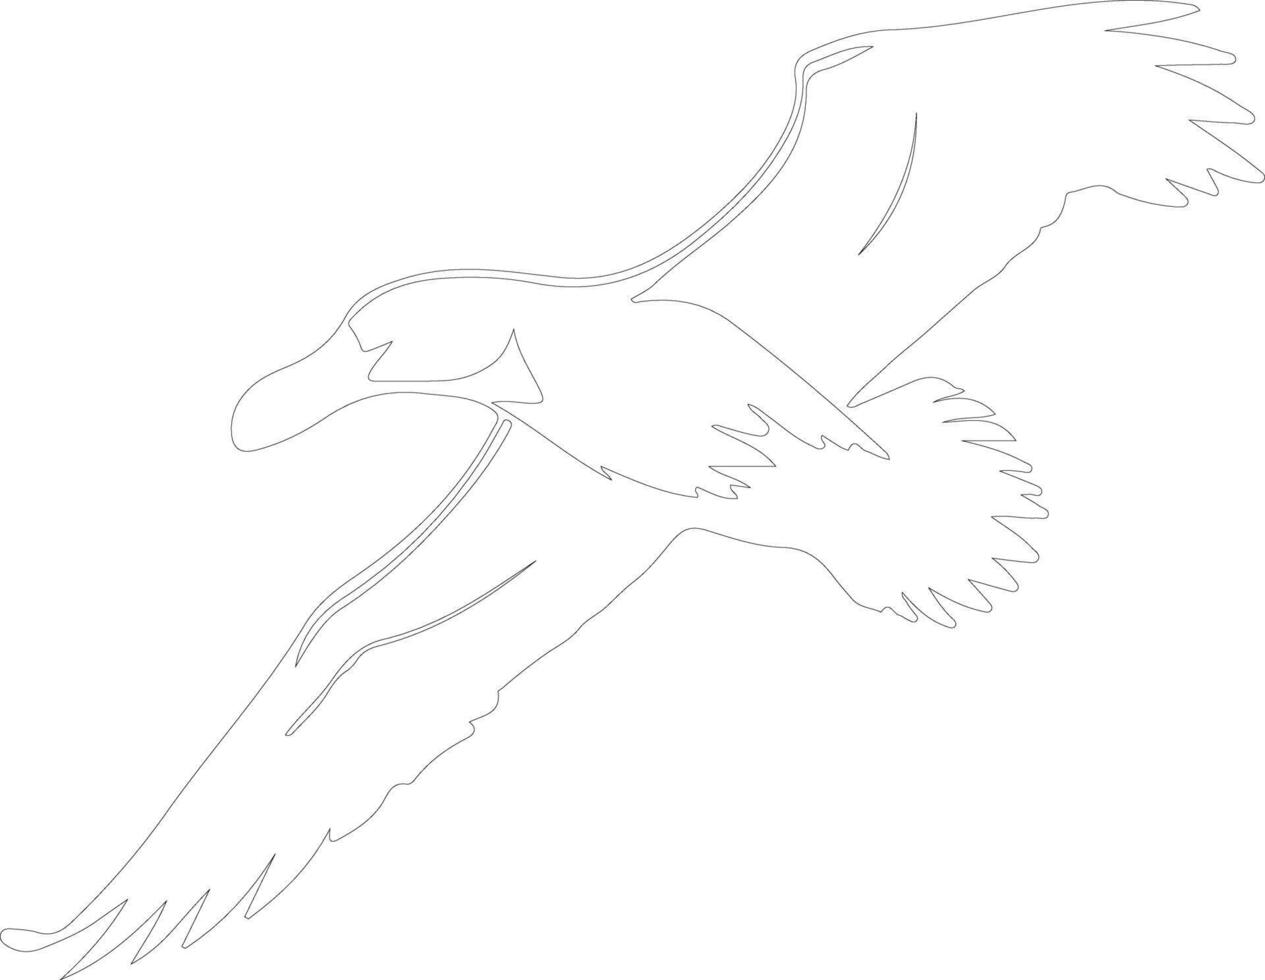 albatross översikt silhuett vektor